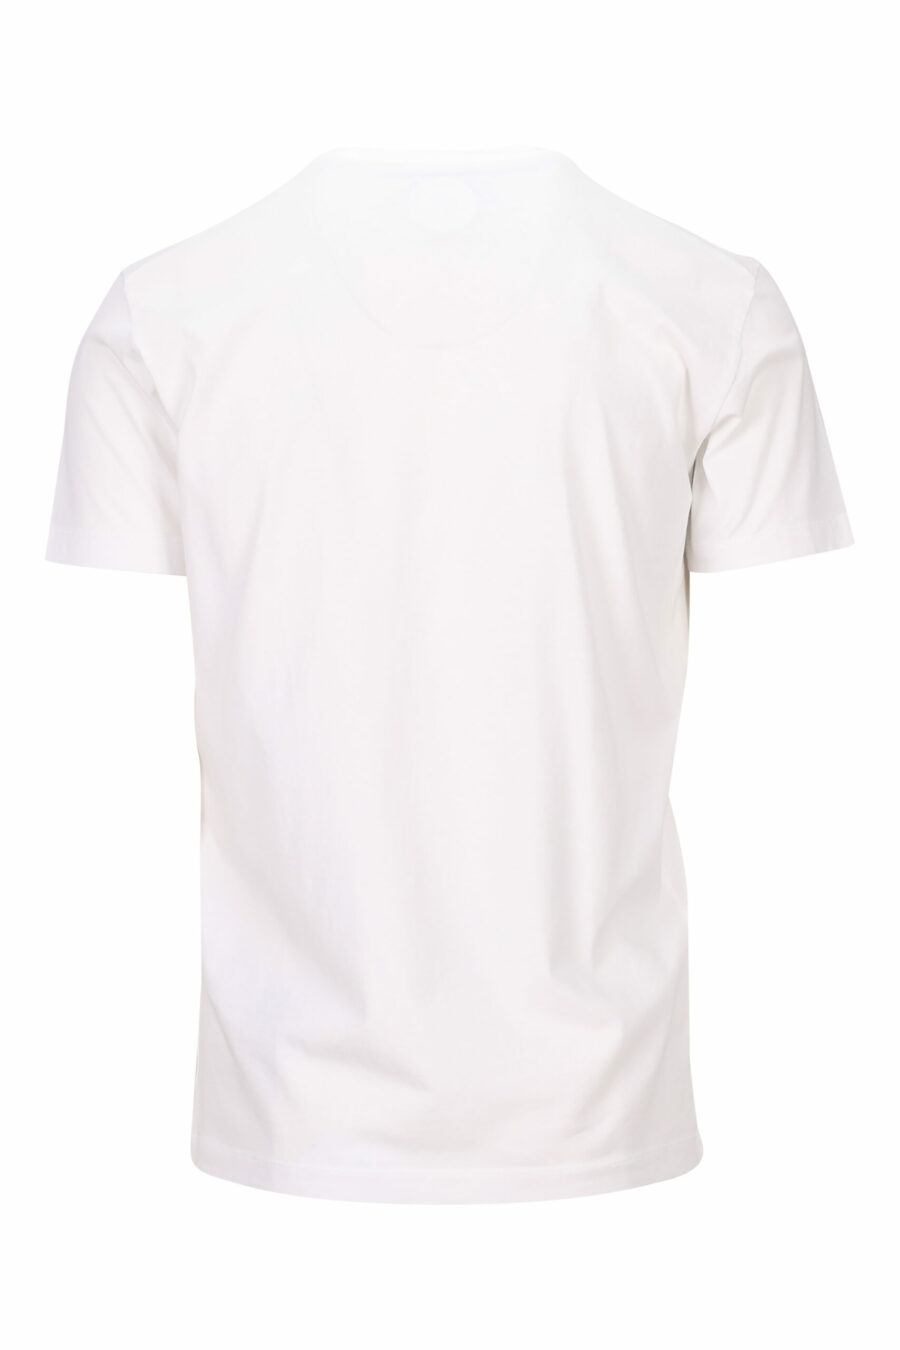 Weißes T-shirt mit Maxilogo "ceresio 9, milano" - 8054148504779 1 skaliert